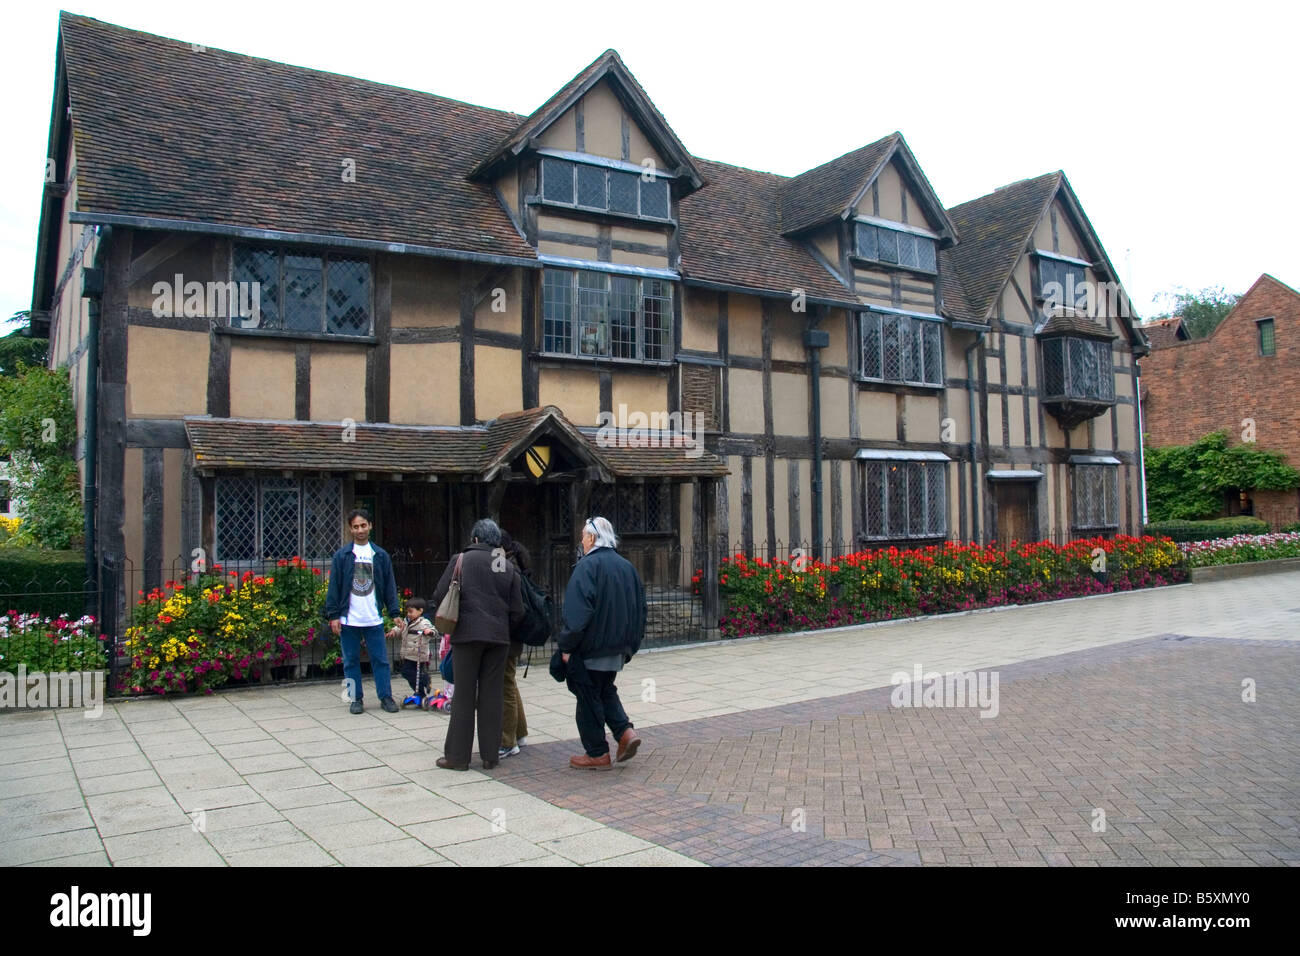 Les touristes visitent William Shakespeare birthplace dans la ville de Stratford Upon Avon, Warwickshire, Angleterre Banque D'Images